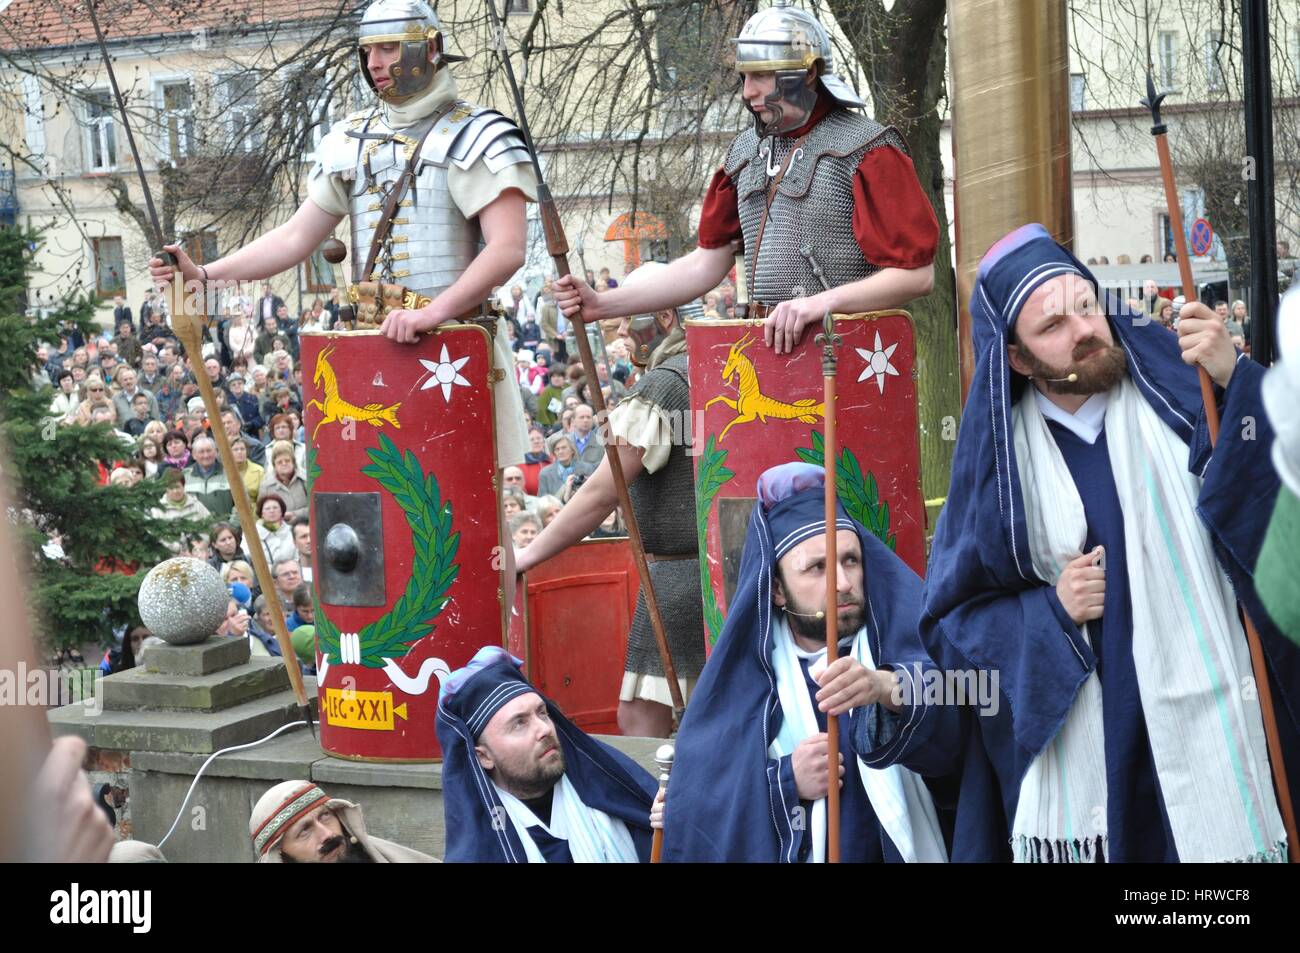 Rievocazione storica dei legionari romani e il Sinedrio membri, durante le esibizioni in strada il mistero della passione. Foto Stock